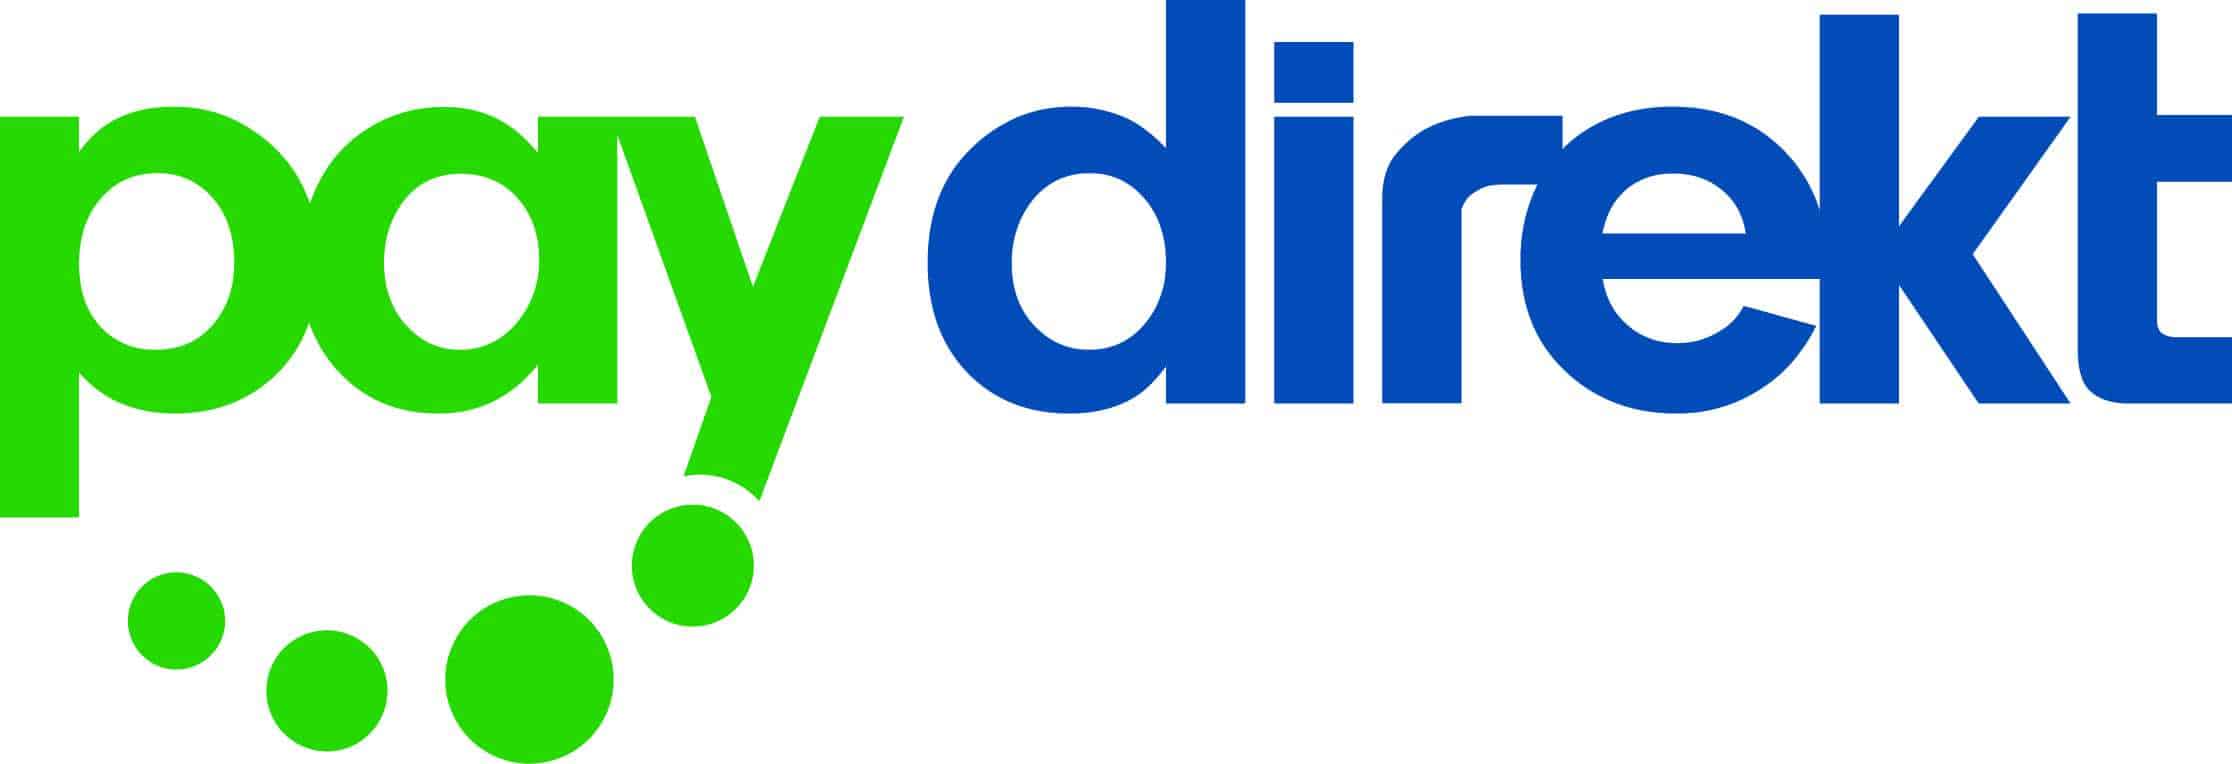 paydirekt logo